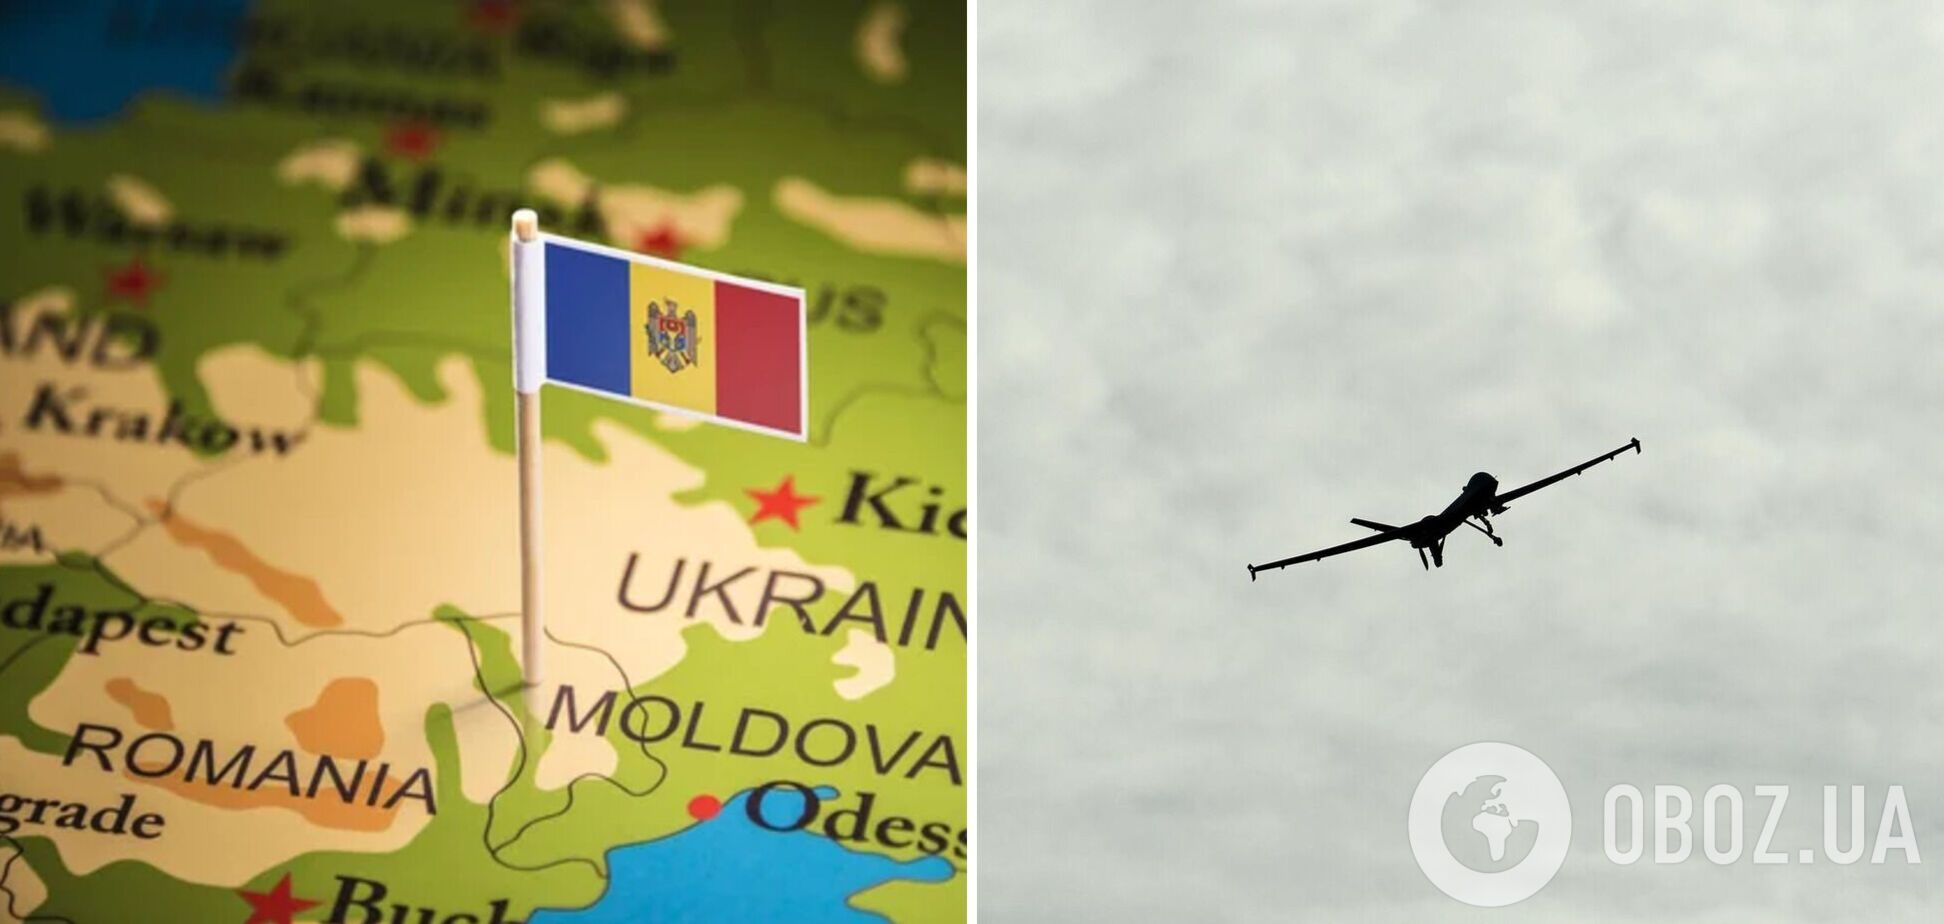 В Молдове отреагировали на атаку БПЛА от ее границы: что известно об инциденте